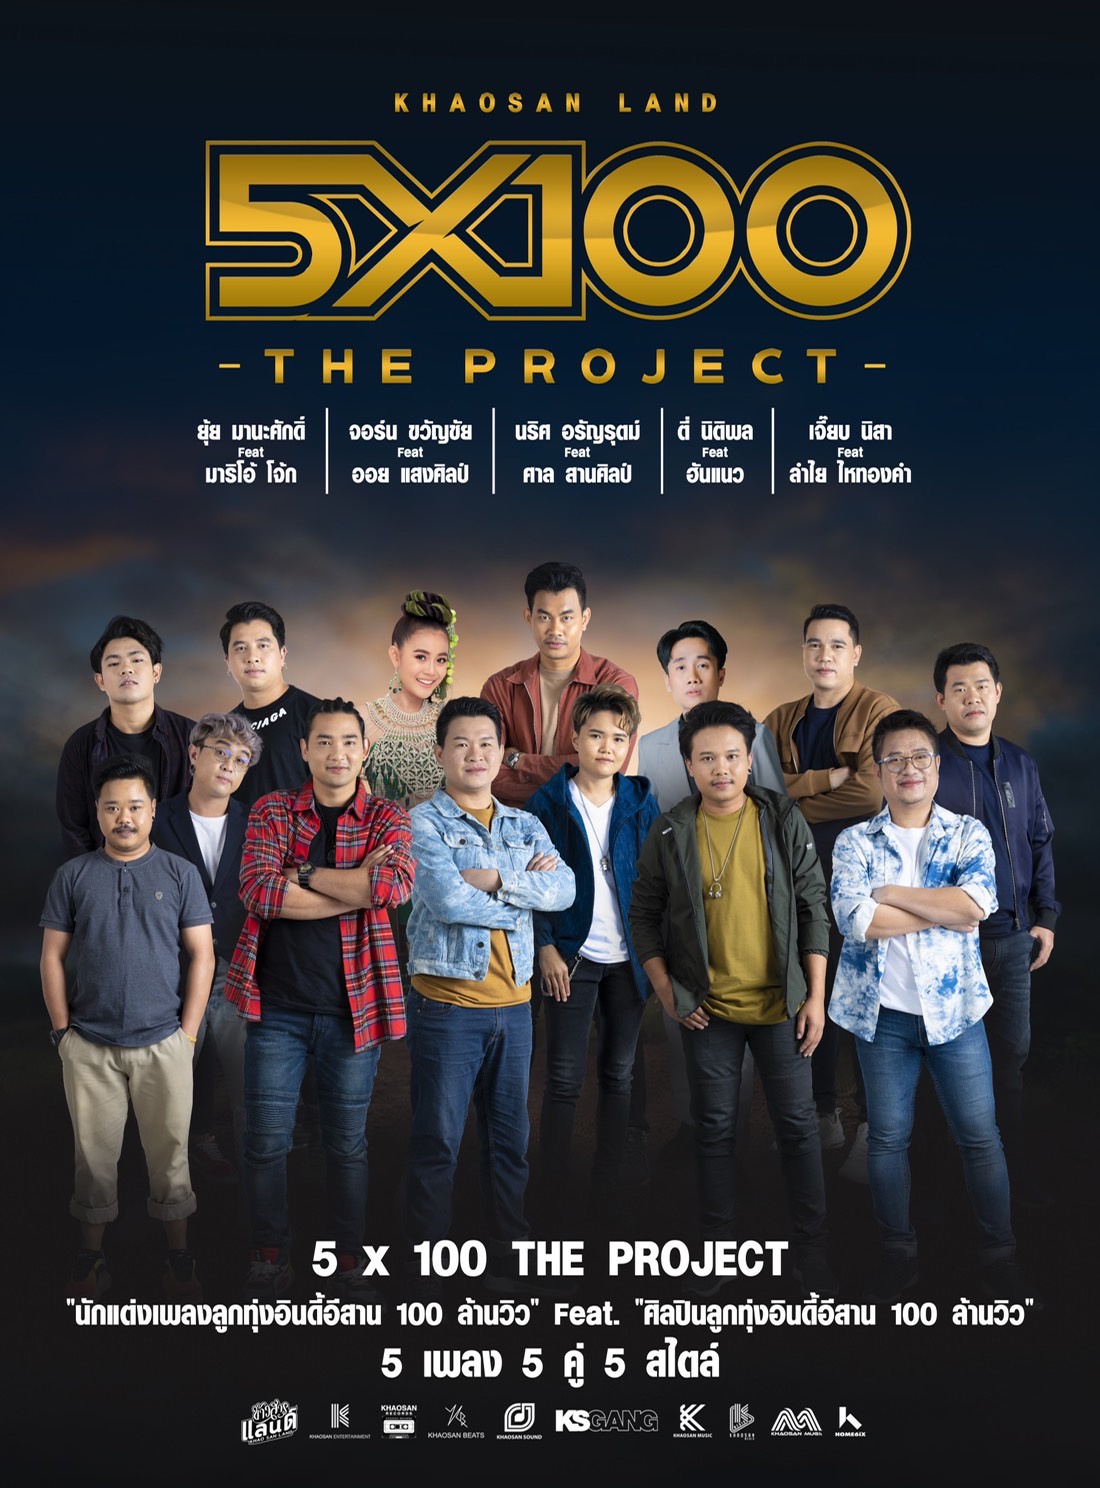 การรวมตัวครั้งยิ่งใหญ่ของวงการเพลงลูกทุ่งอินดี้ Khaosan Land 5x100 The Project นักเขียนร้อยล้าน ฟีทเจอริ่ง นักร้องร้อยล้าน